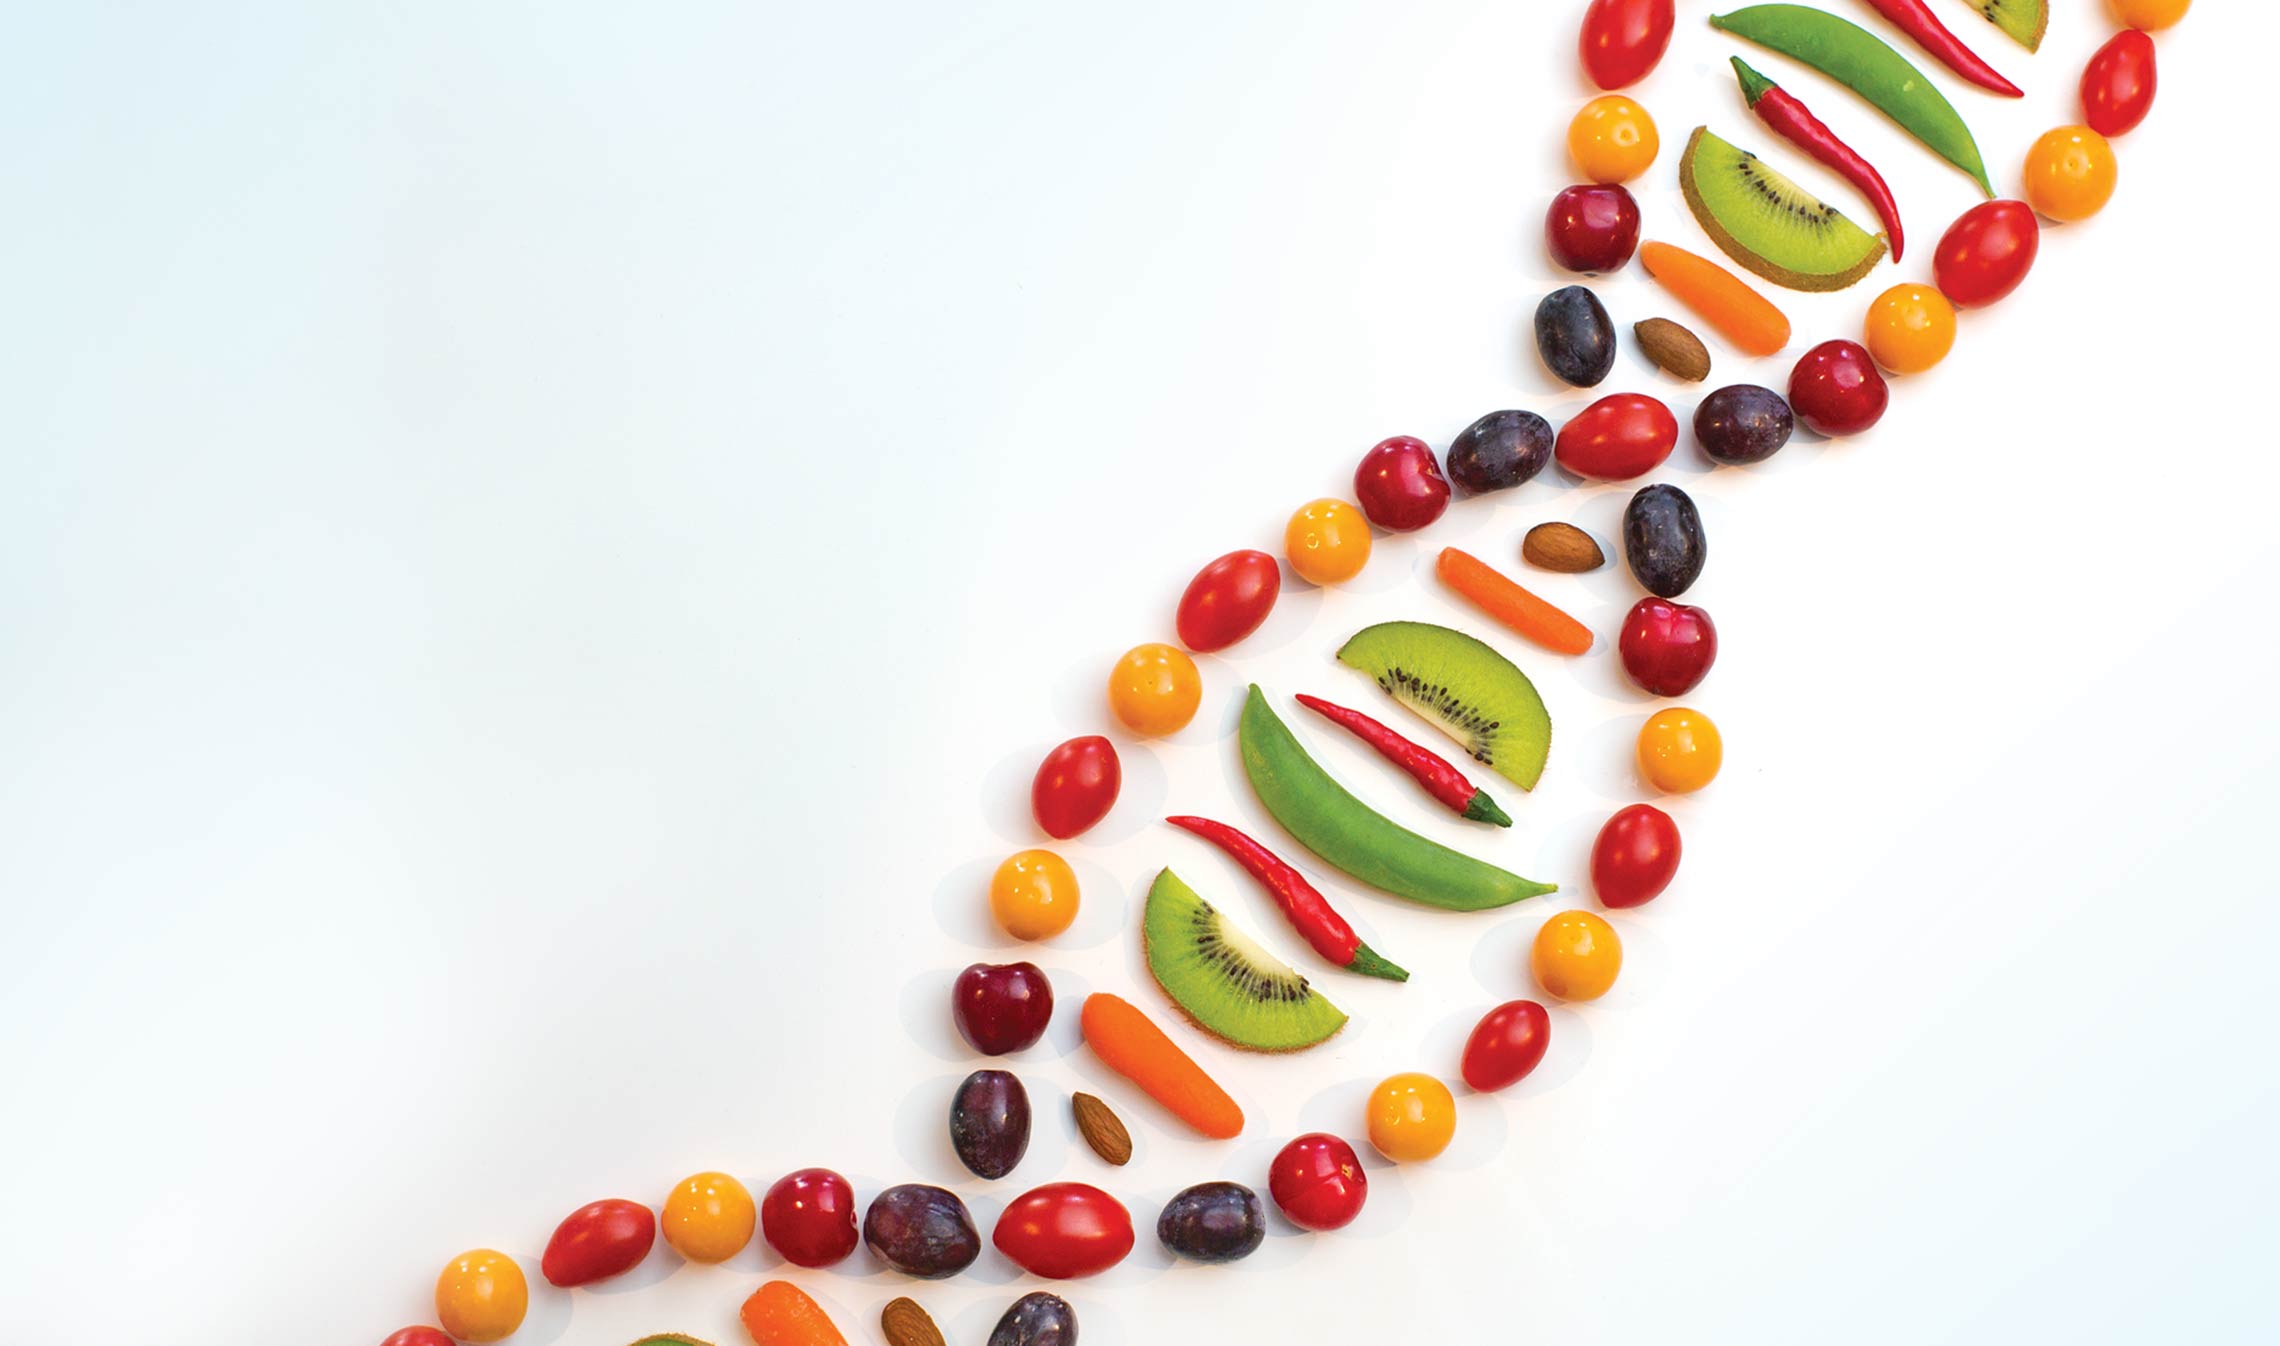 DNA Diet